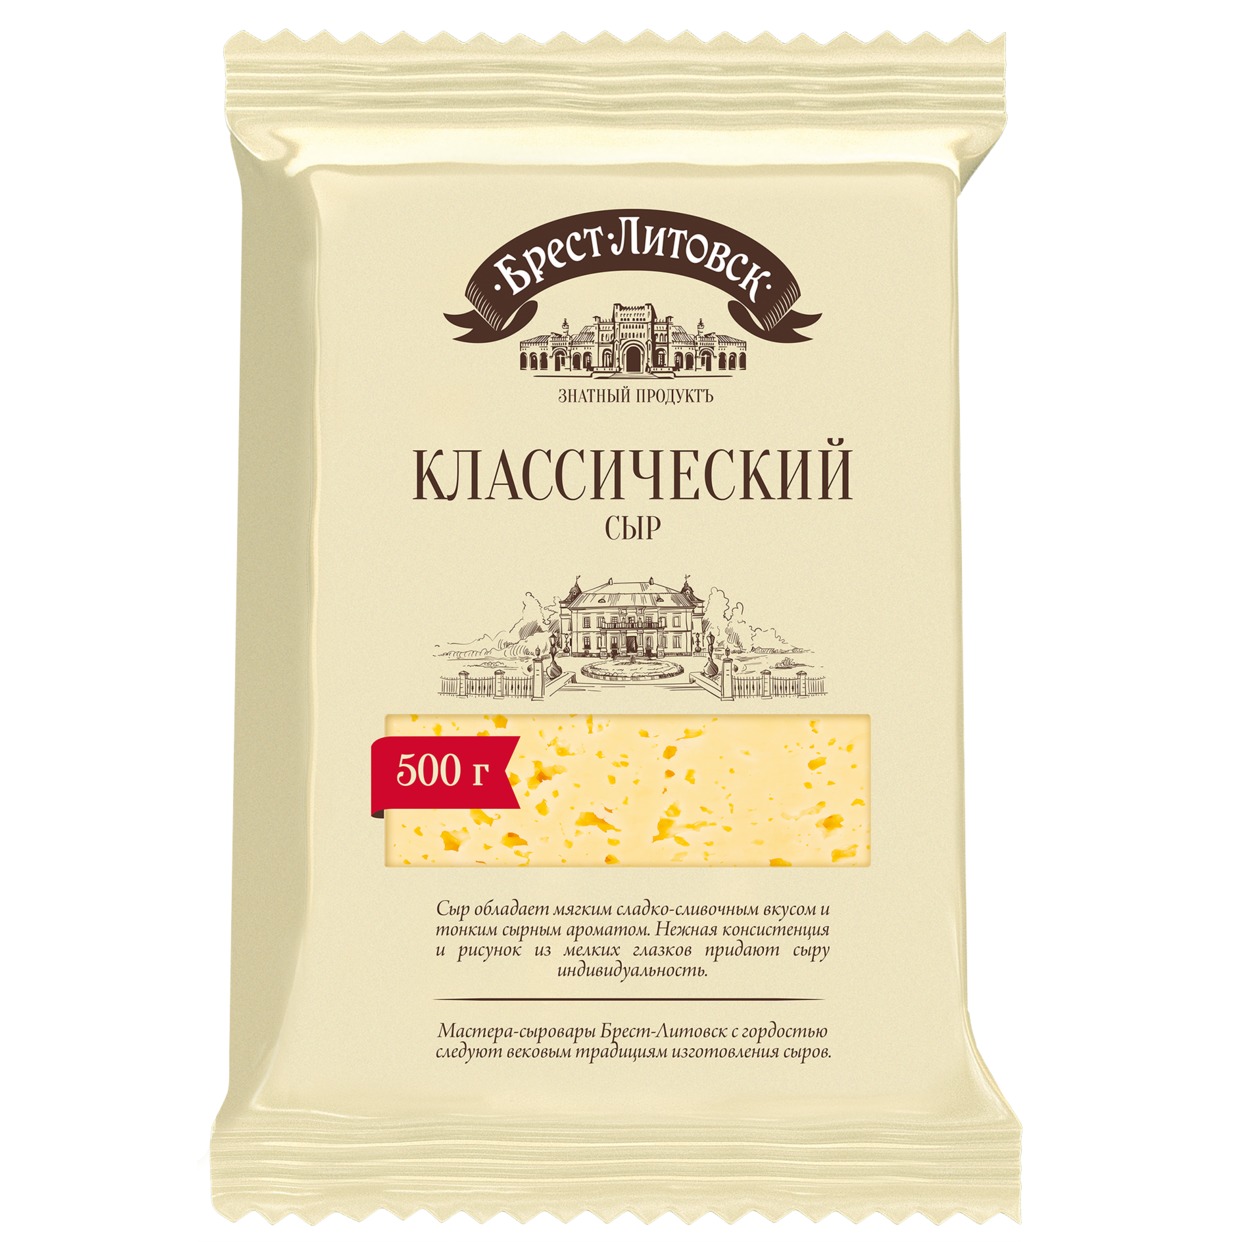 Сыр "БРЕСТ-ЛИТОВСК классический" массовой долей жира в сухом веществе 45% полутвердый 500г. по акции в Пятерочке